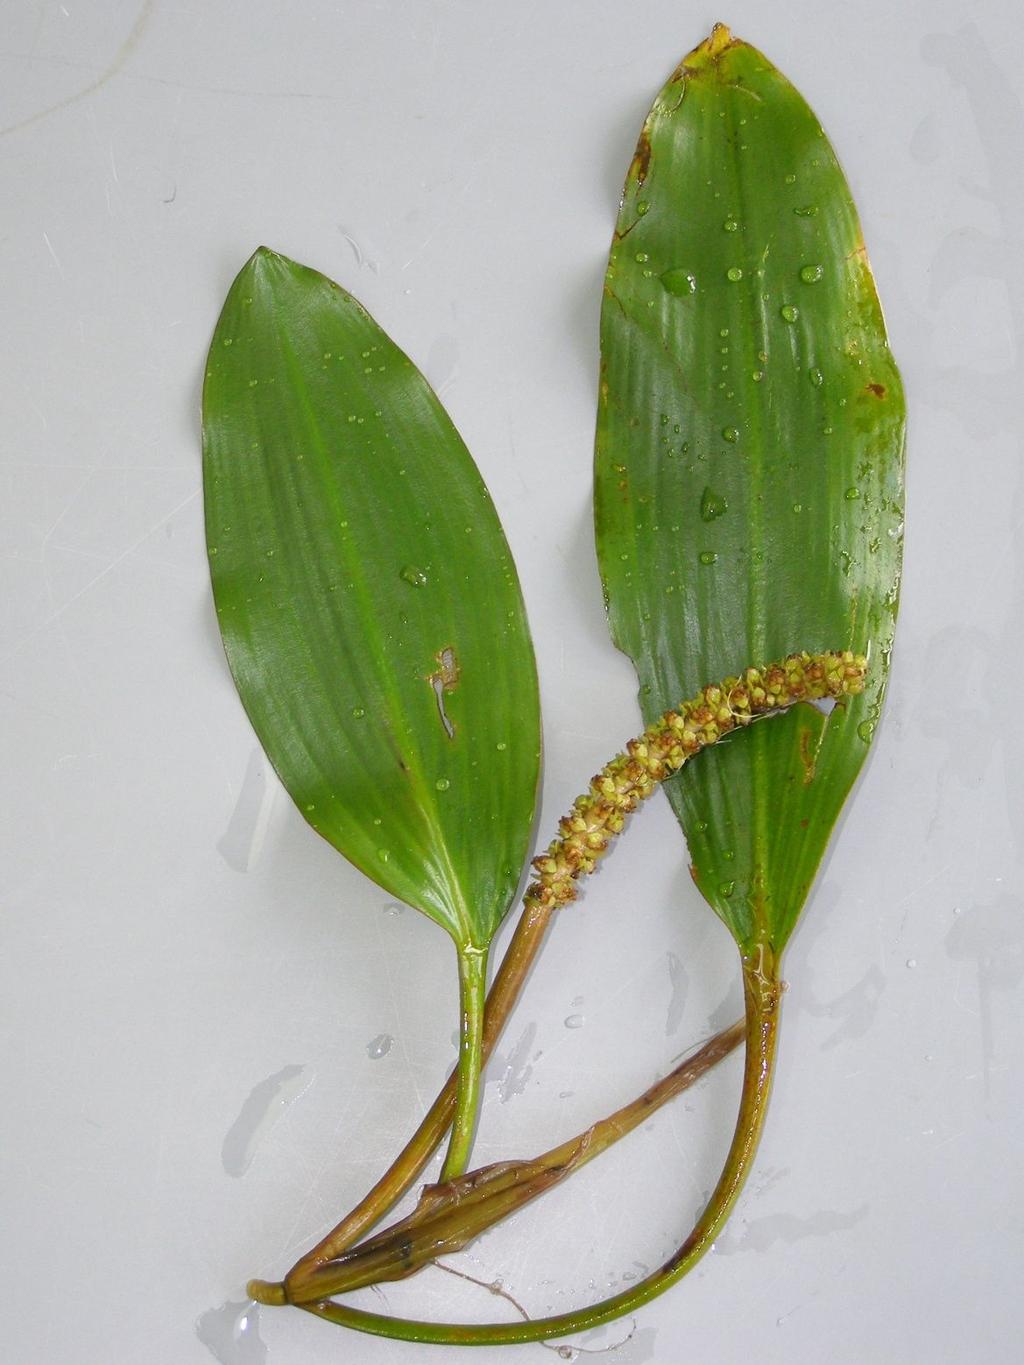 Potamogeton nodosus -liście pływające nieprzezroczyste, skórzaste, 7-11 równoległych żyłek lateralnych po każdej stronie nerwu środkowego, jajowate do